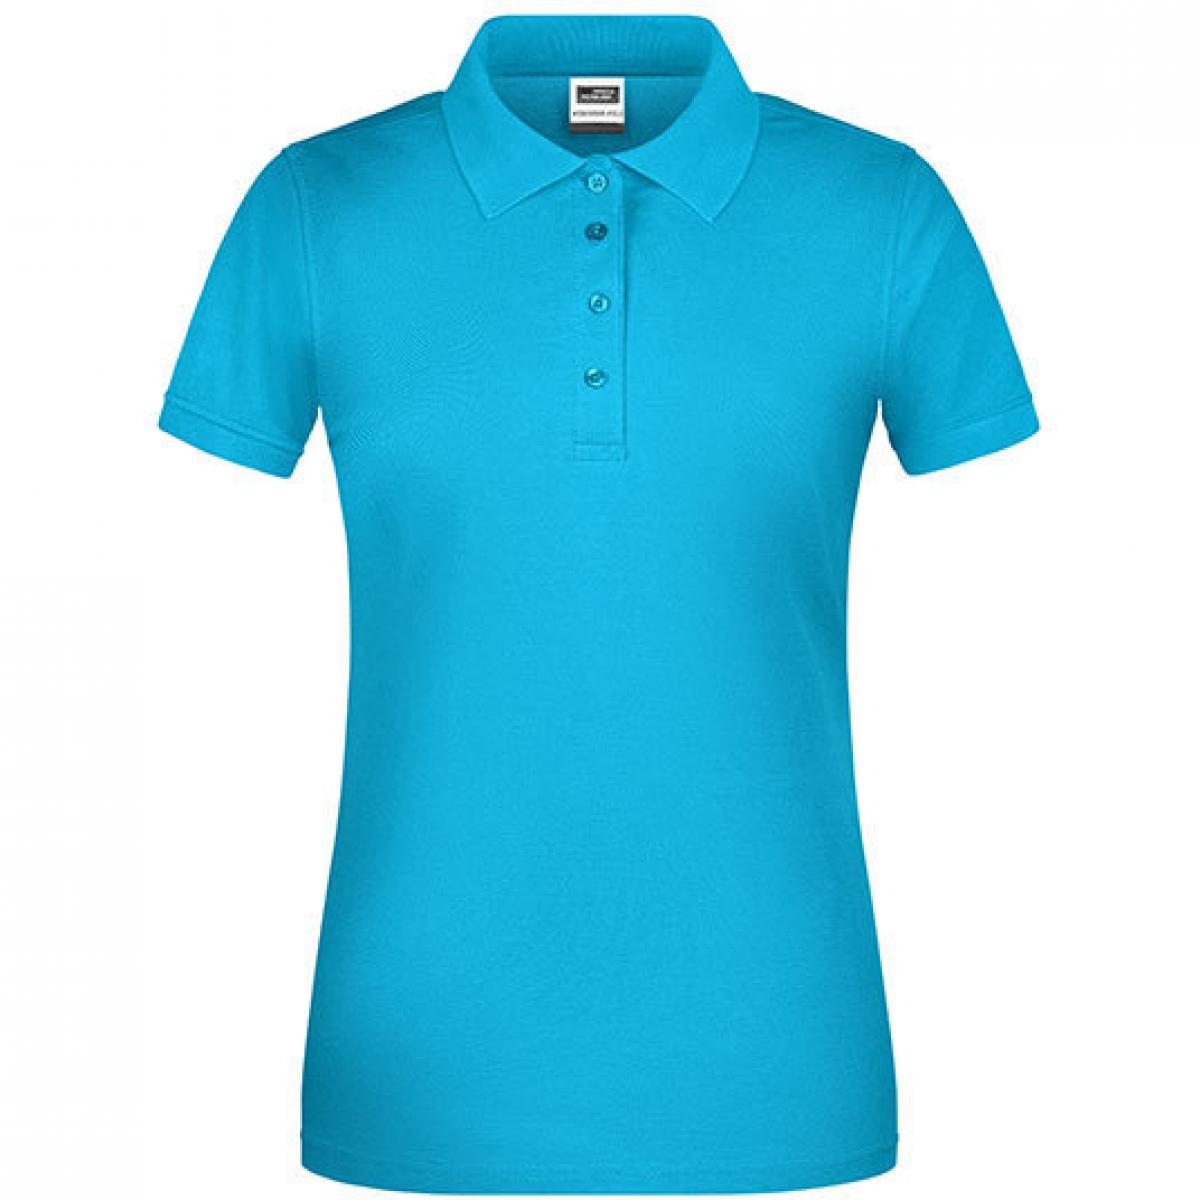 Hersteller: James+Nicholson Herstellernummer: JN873 Artikelbezeichnung: Damen Bio Workwear Polo, Waschbar bis 60 °C Farbe: Turquoise